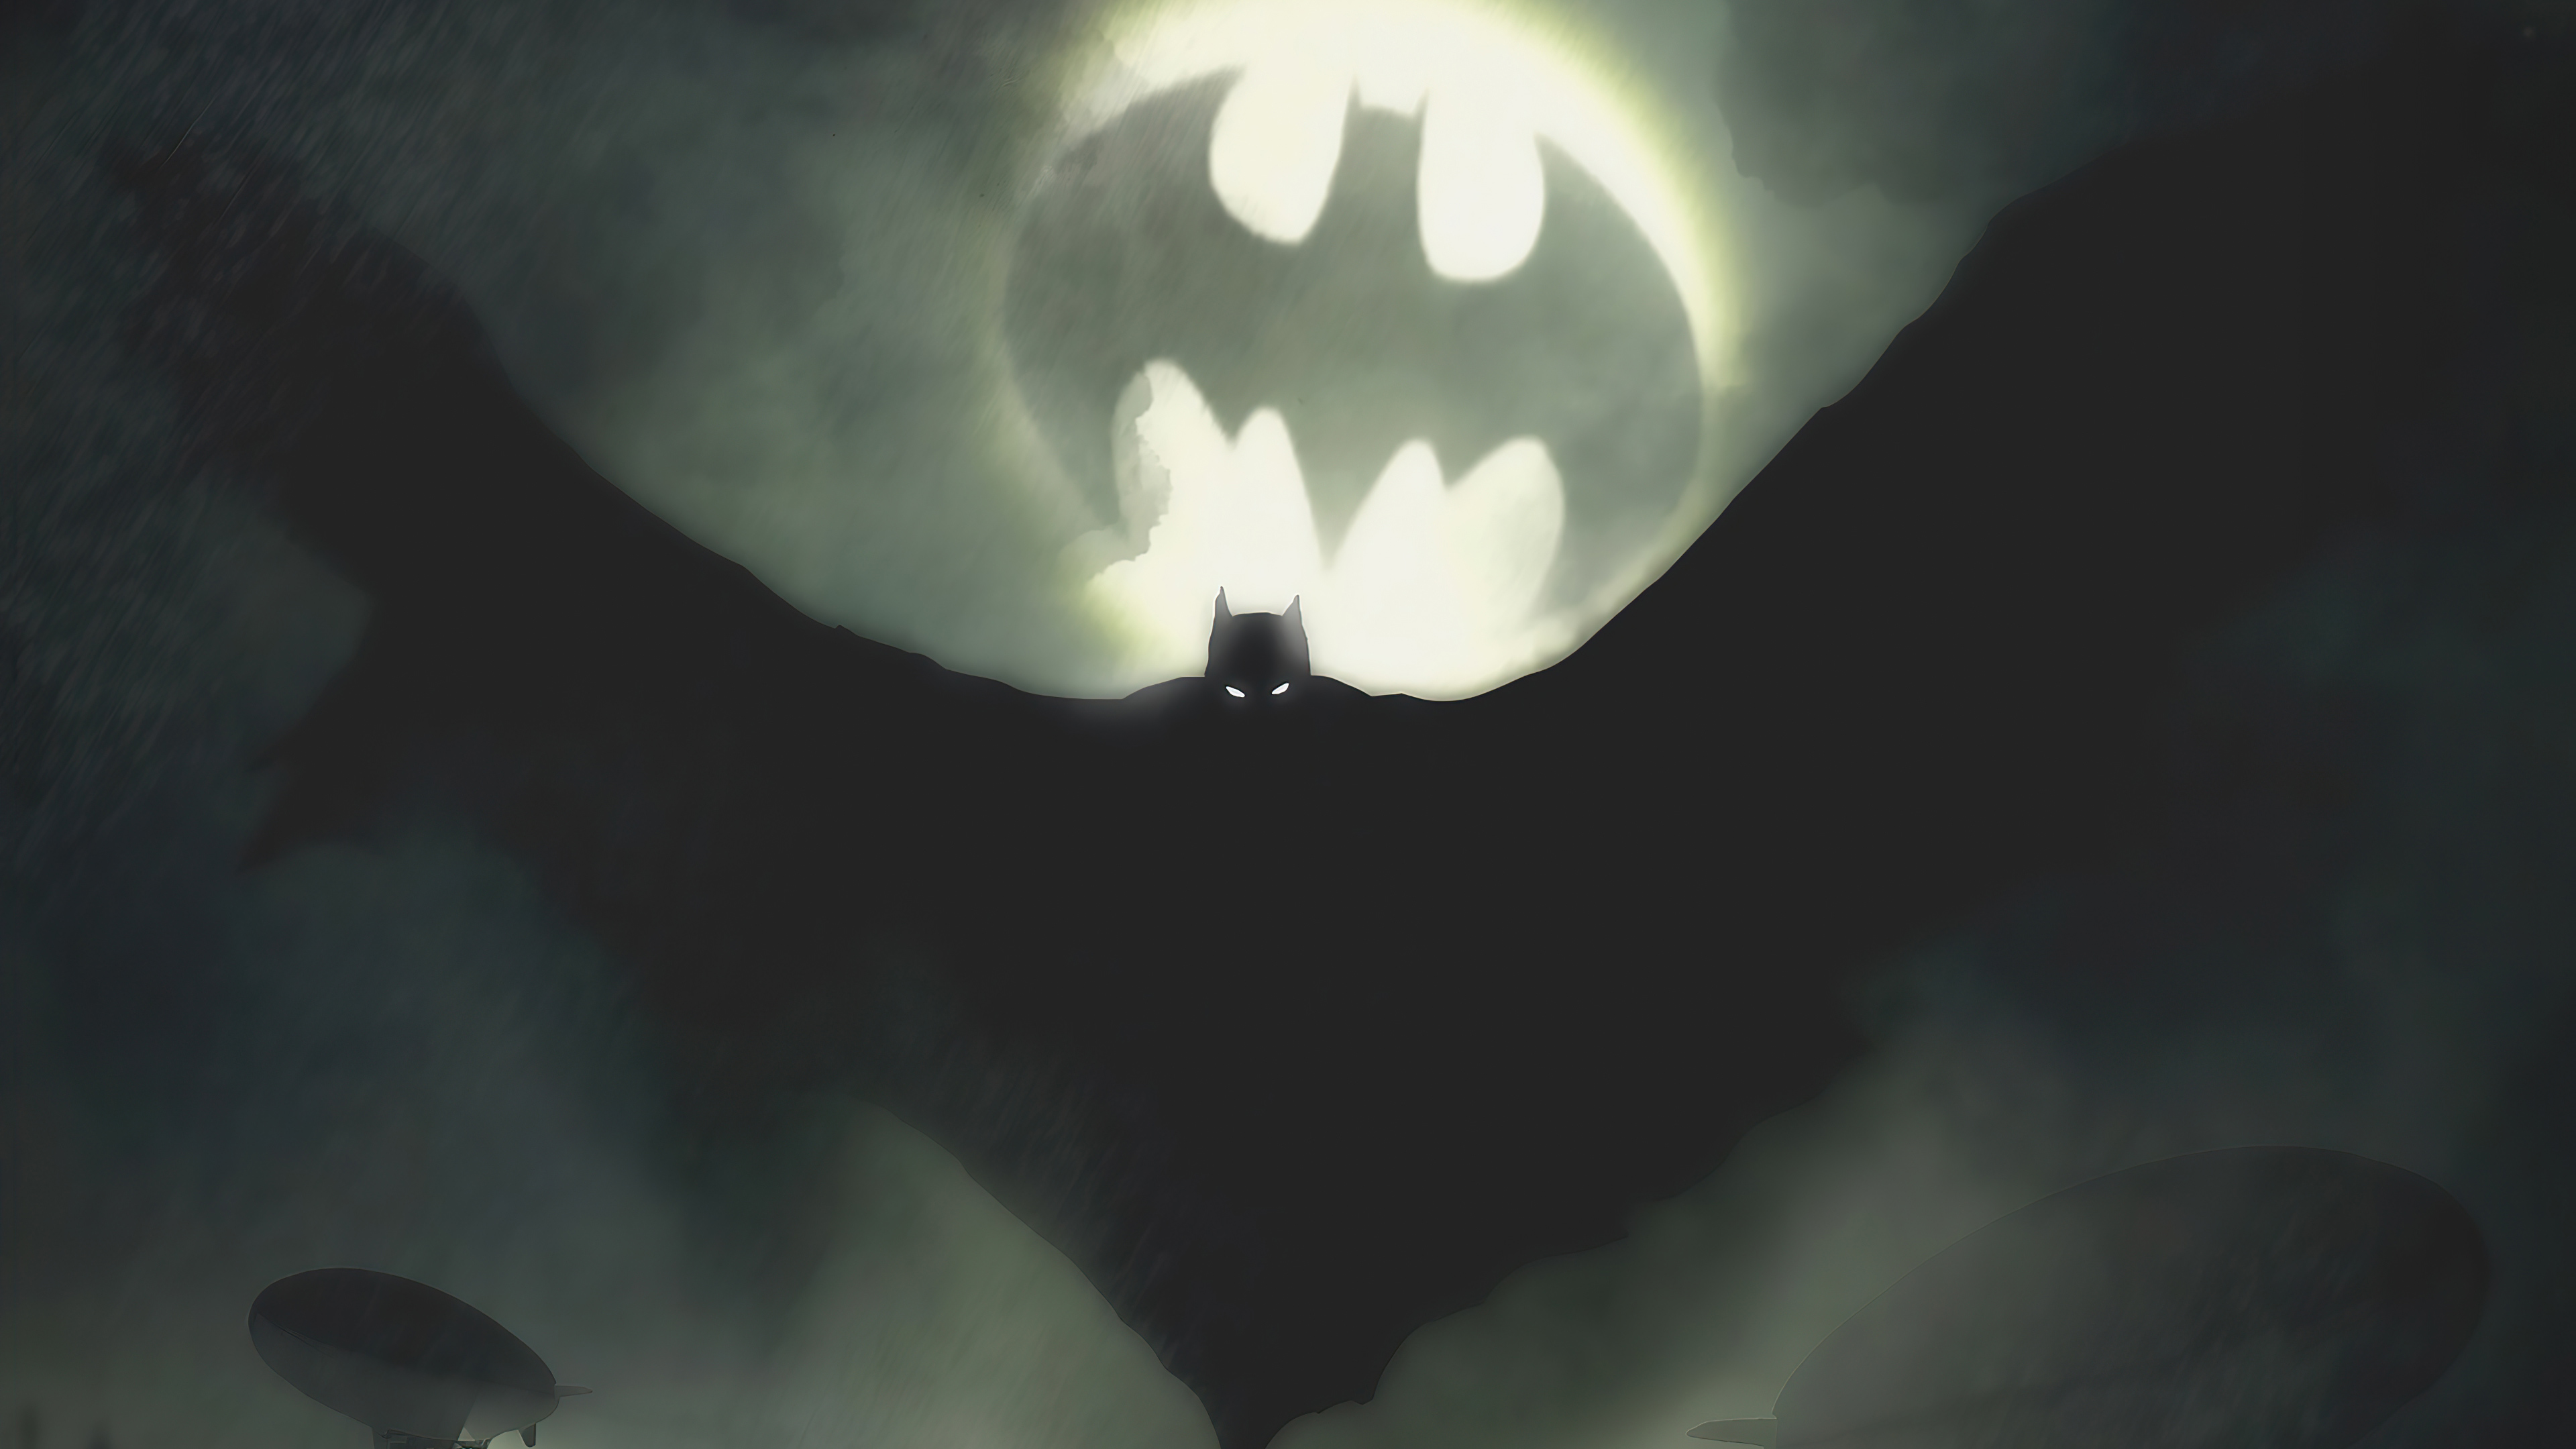 Download mobile wallpaper Batman, Comics, Dc Comics, Bat Signal for free.